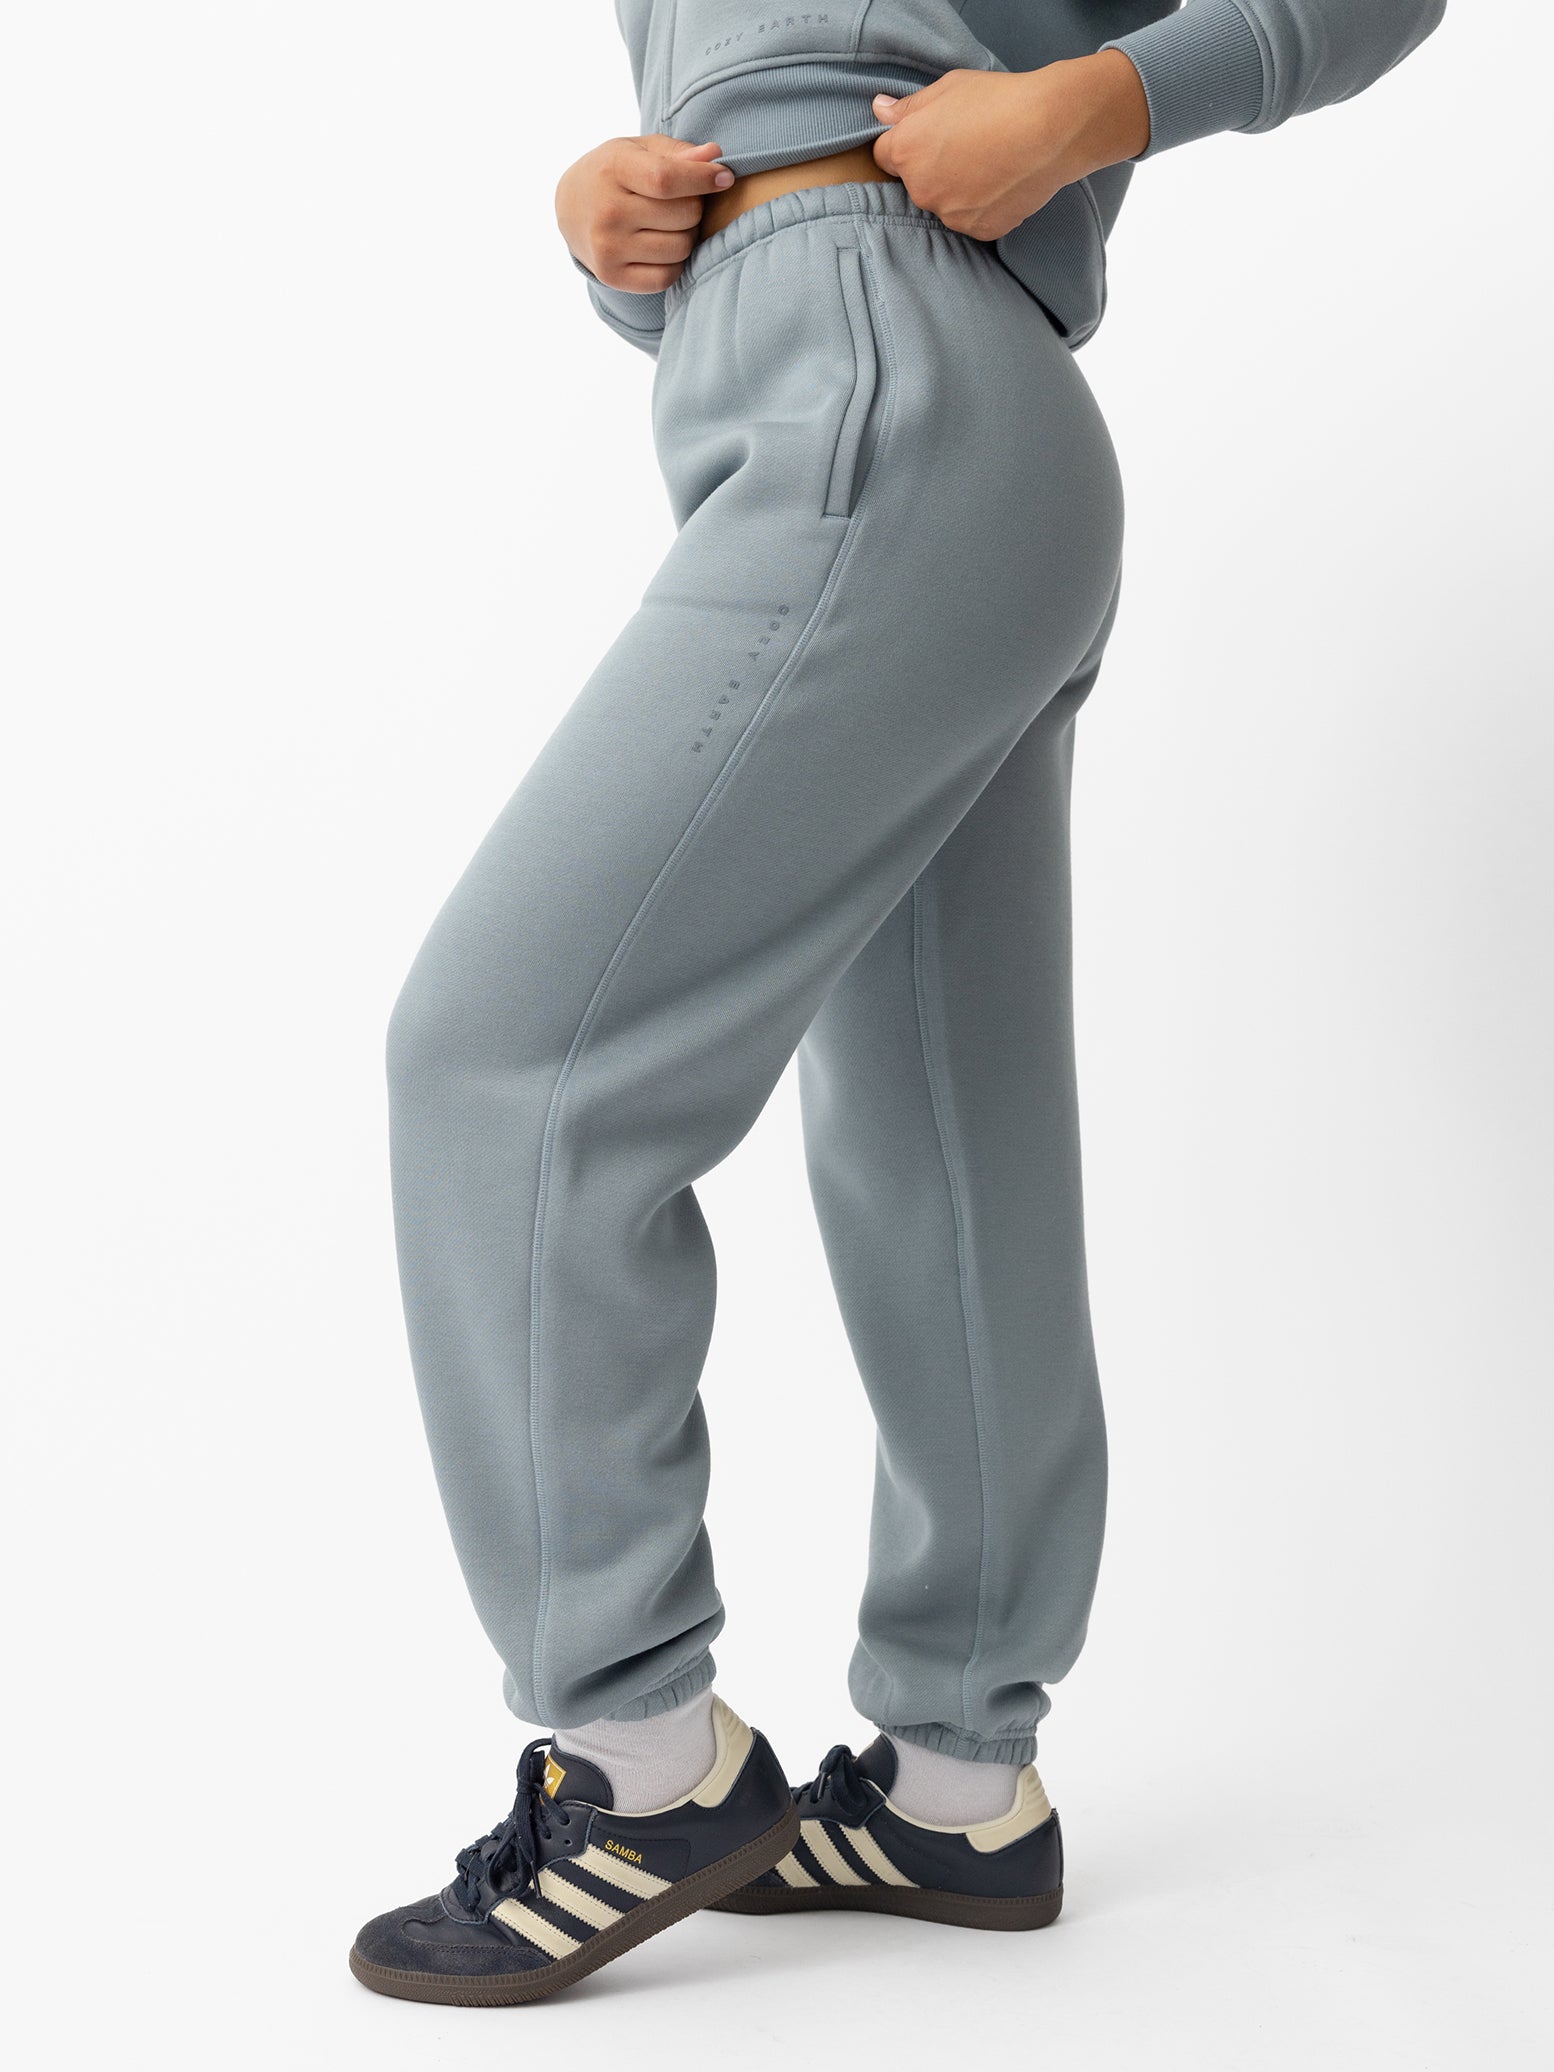 Woman wearing Smokey Blue CityScape Sweat Pant with white background 